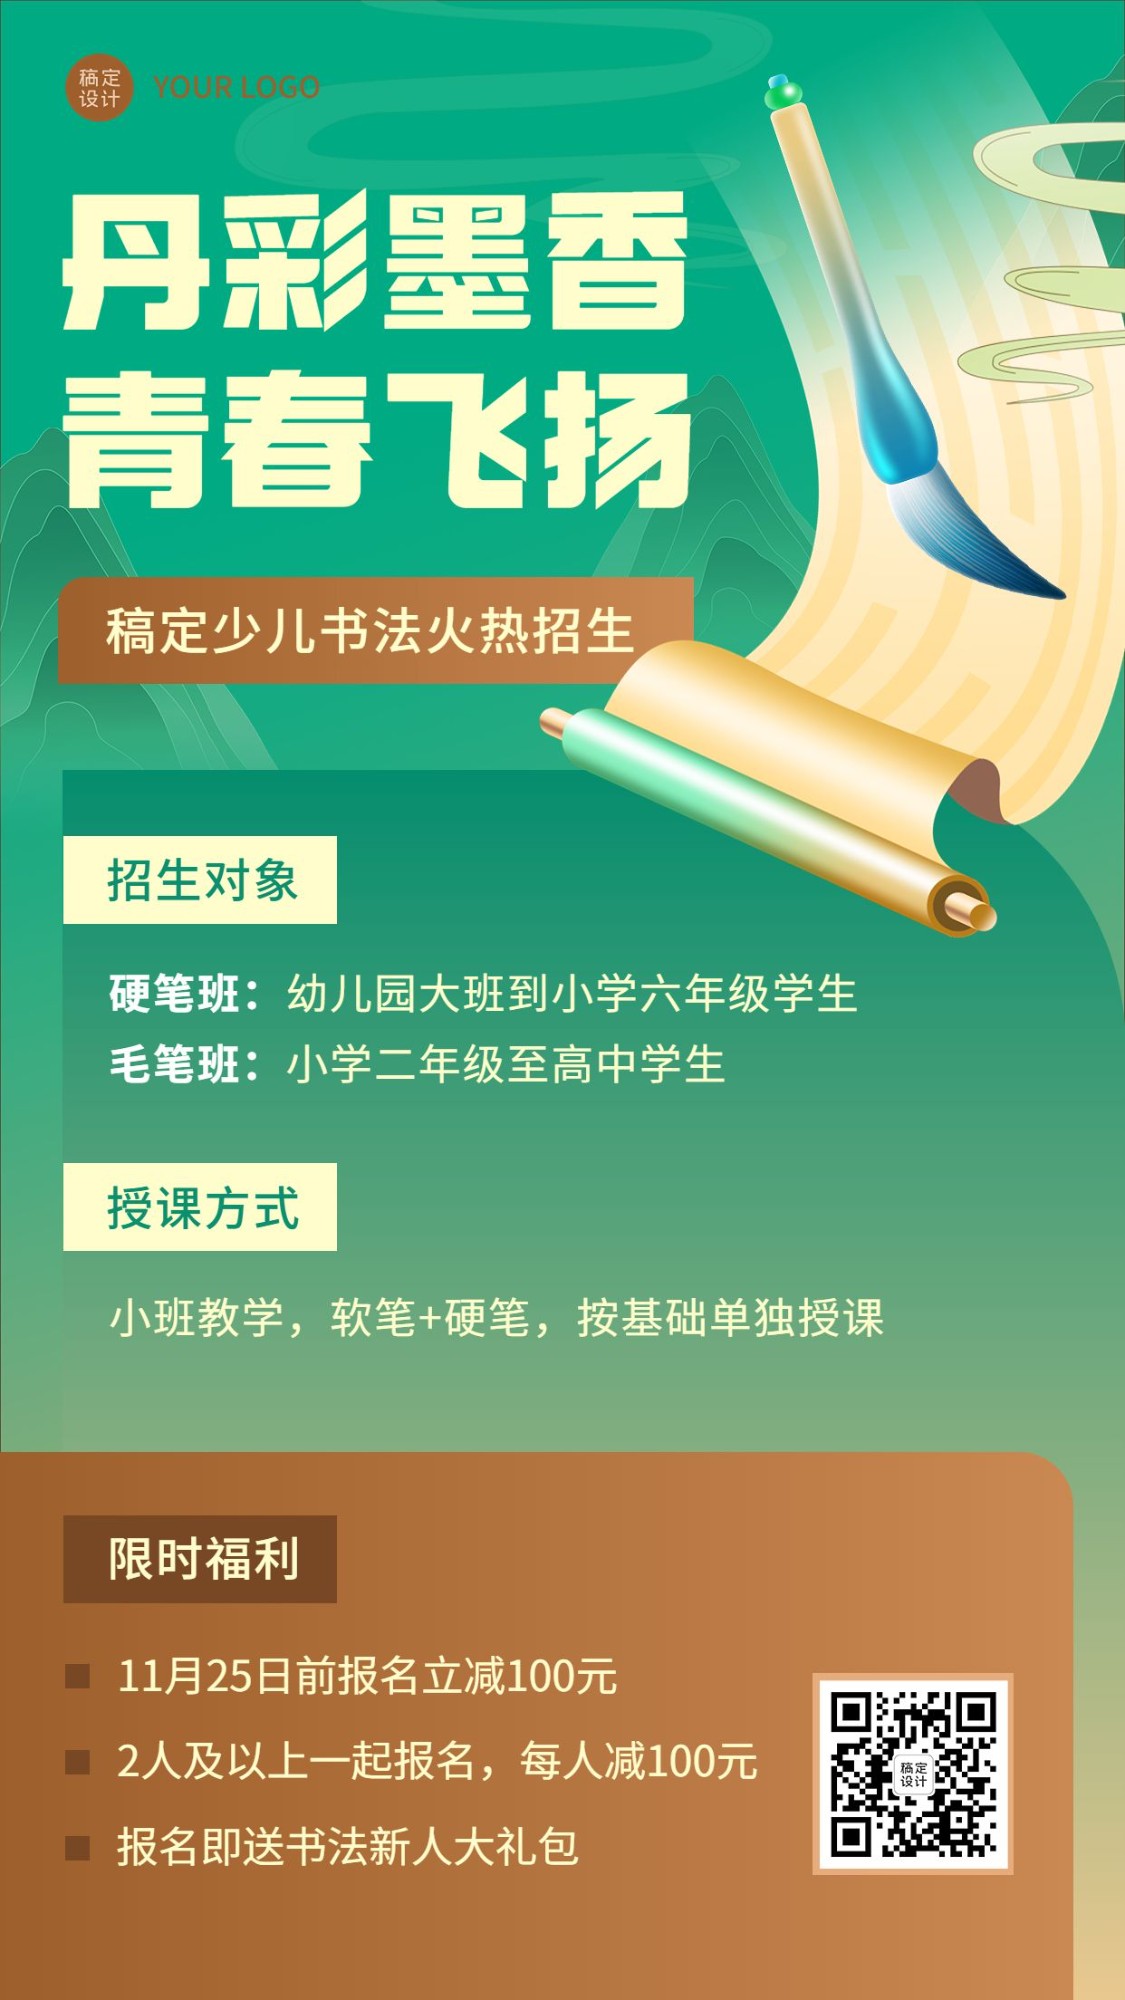 少儿书法课程招生宣传中国风插画手机海报预览效果